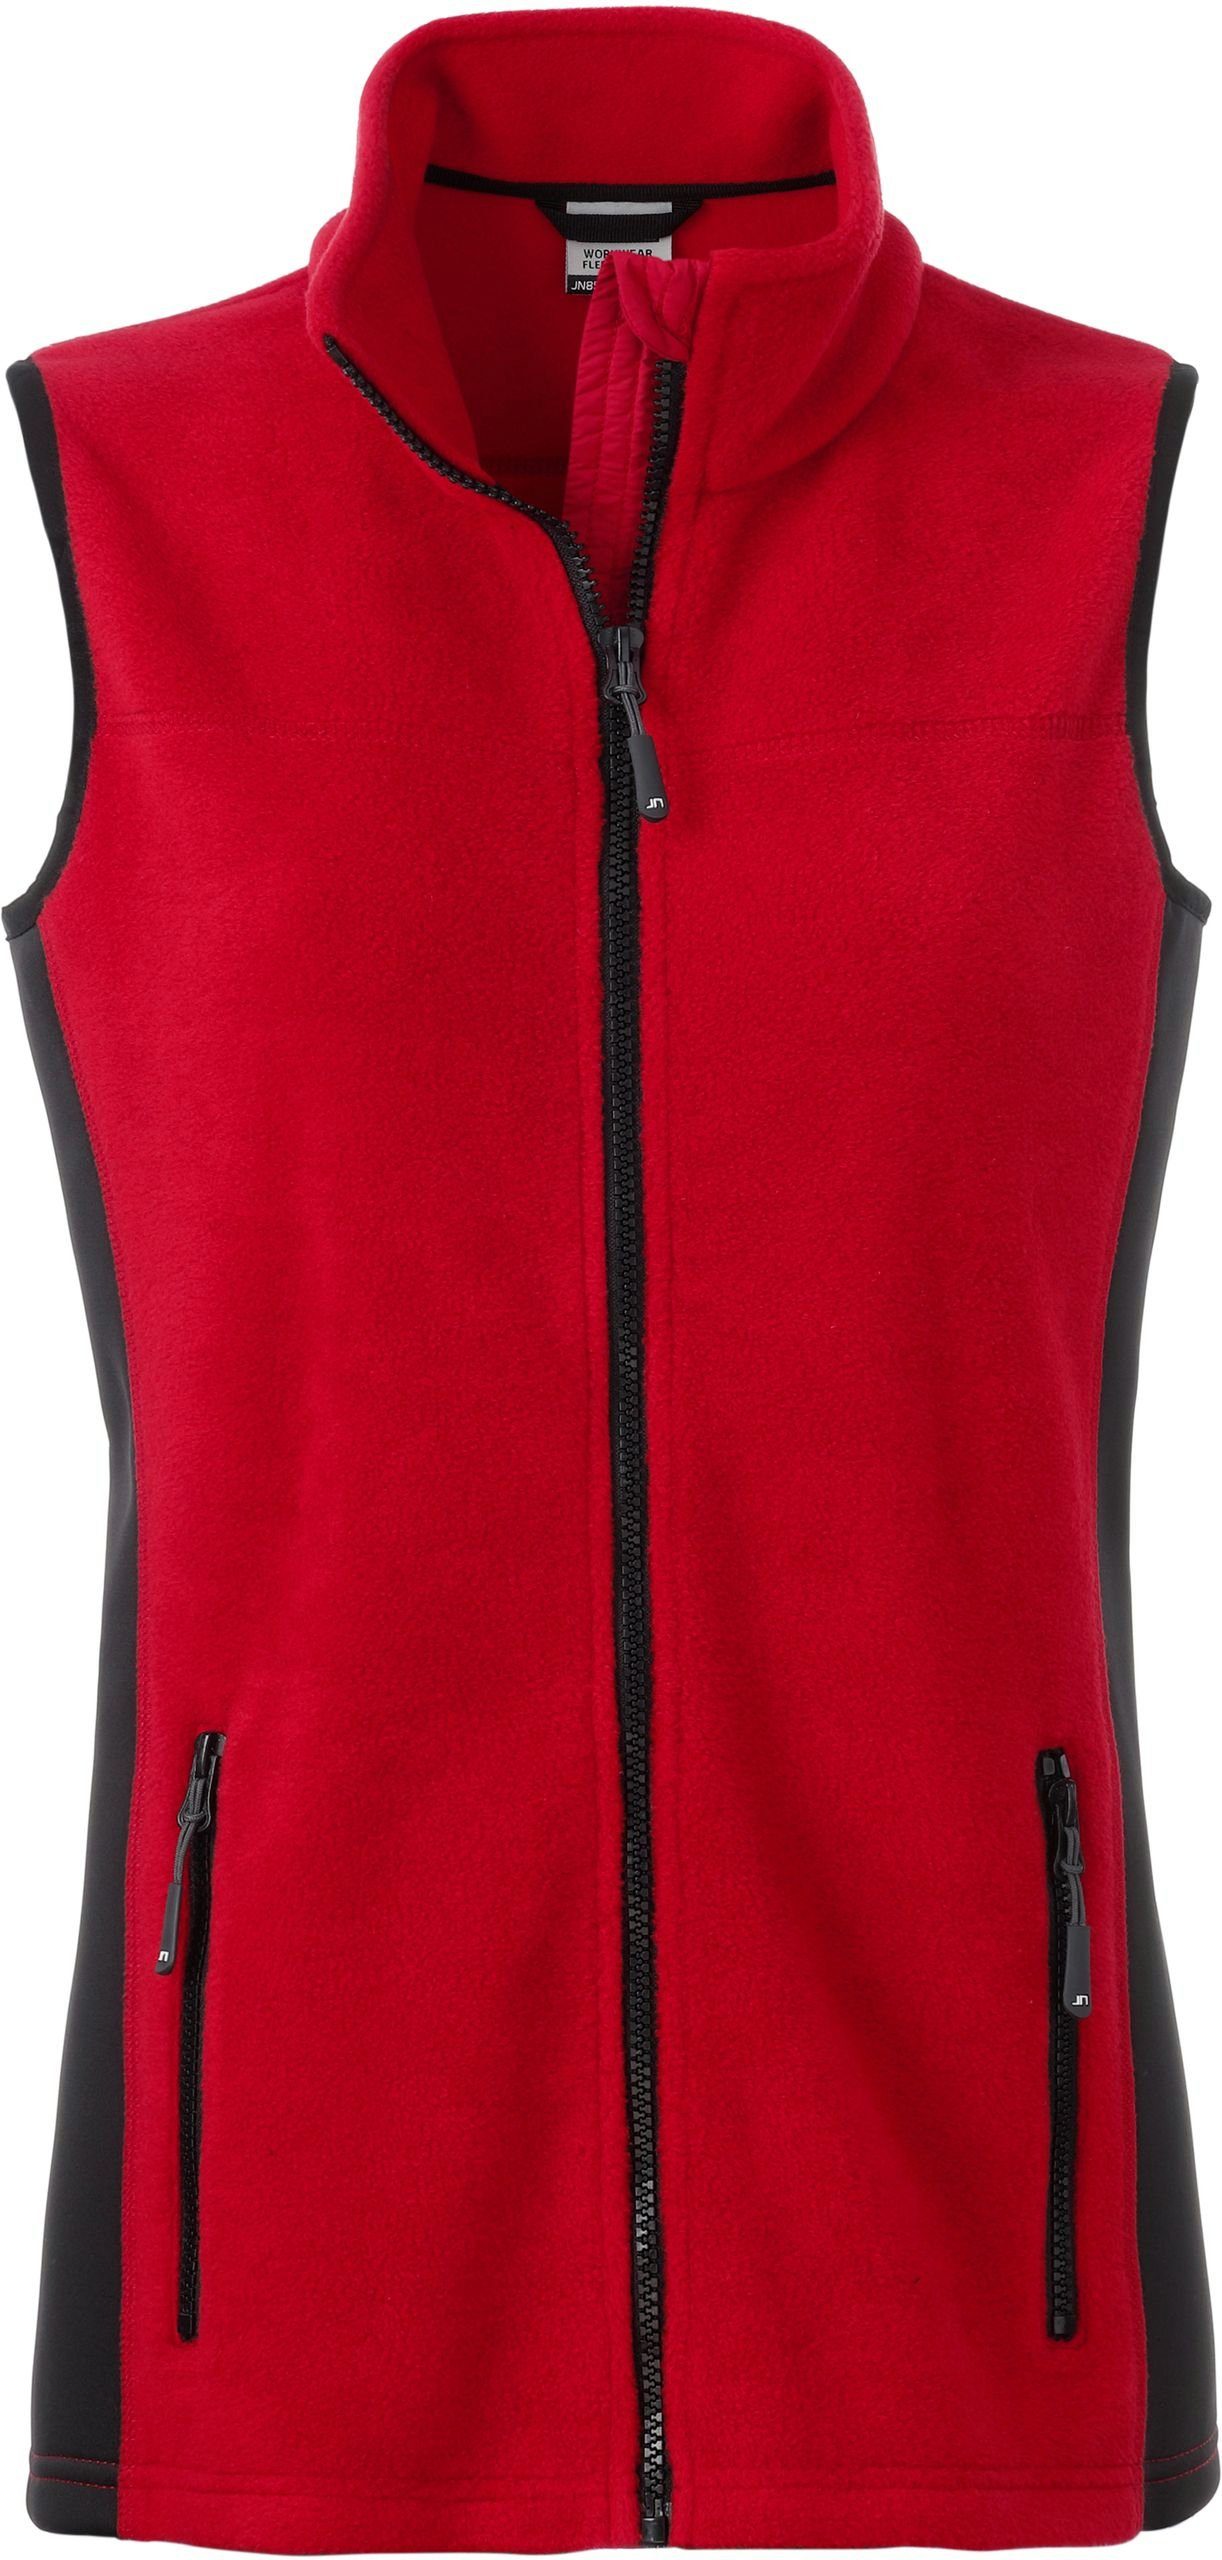 Fleeceweste Fleece FaS50855 RED/BLACK James Weste & Gilet Nicholson Workwear